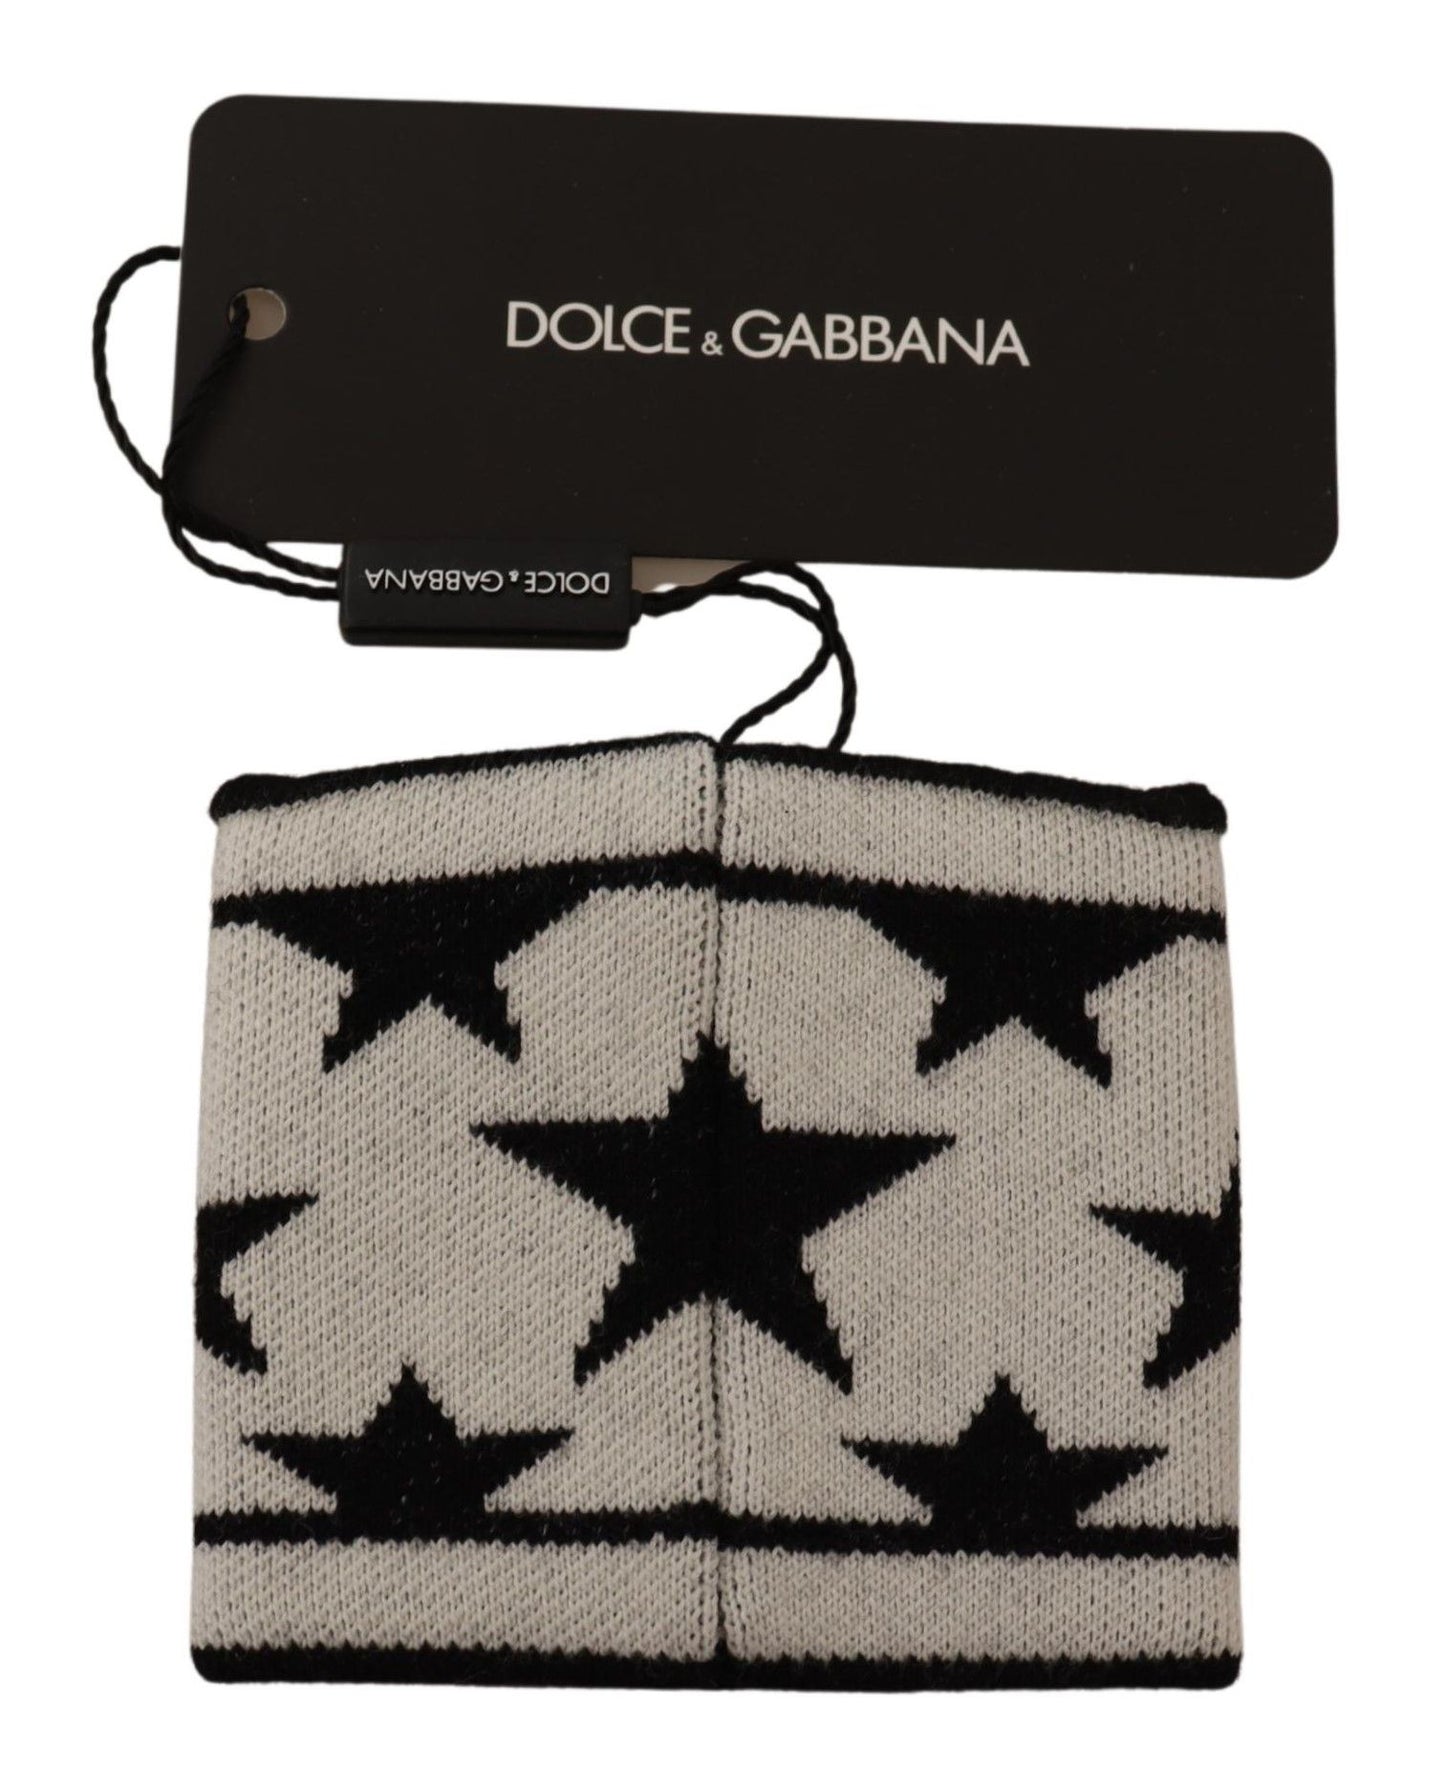 Dolce & Gabbana Black Wool Logo #DGMILLENNIALS 1Pc Wristband